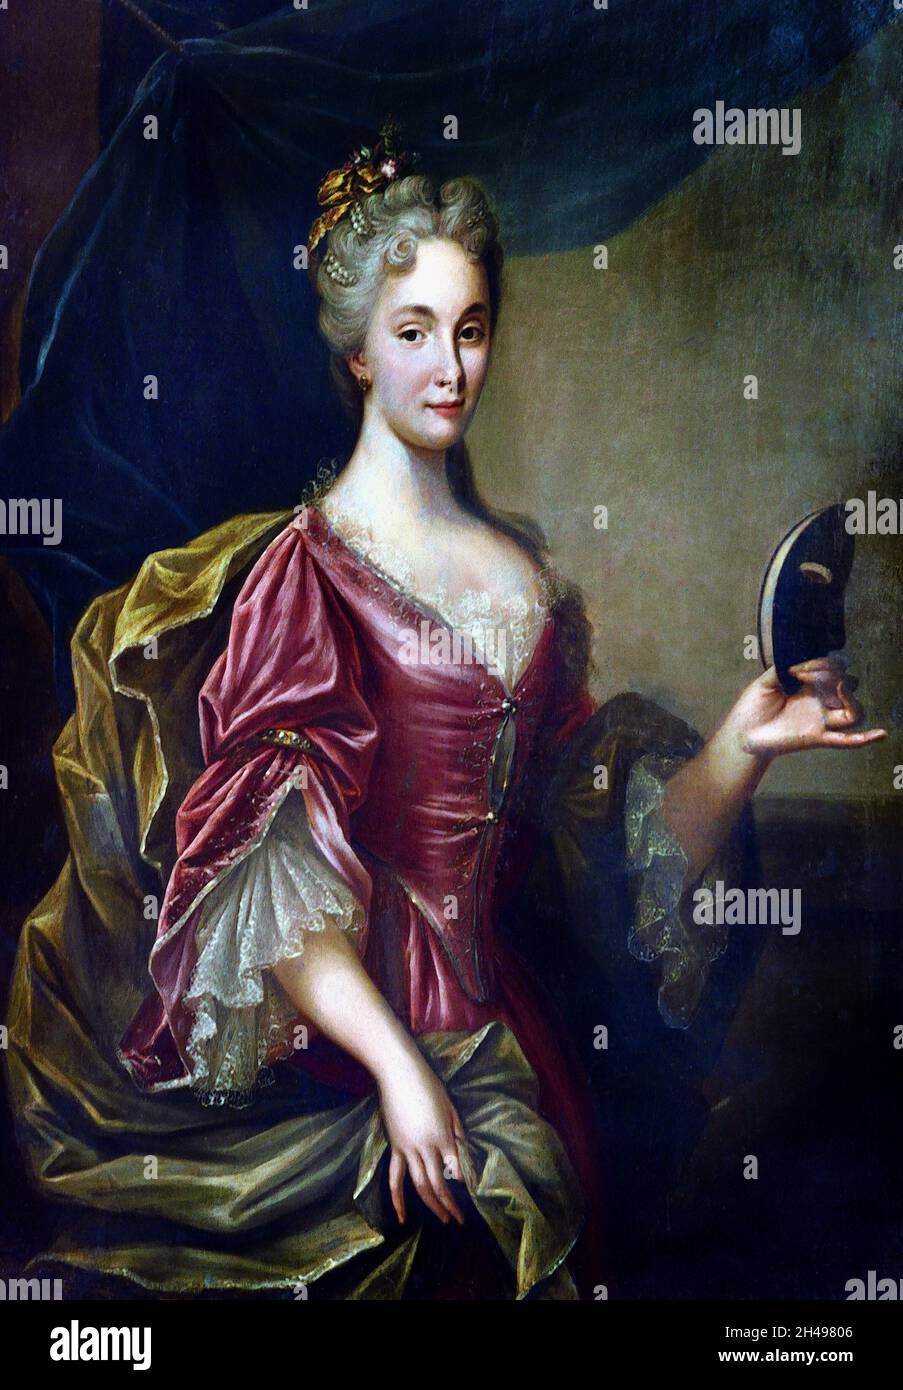 Ritratto di una giovane donna con maschera in mano. Domenico Parodi 1672 – 1740 Genova fu pittore italiano, scultore e architetto del tardo barocco. Italia, Italiano, Foto Stock